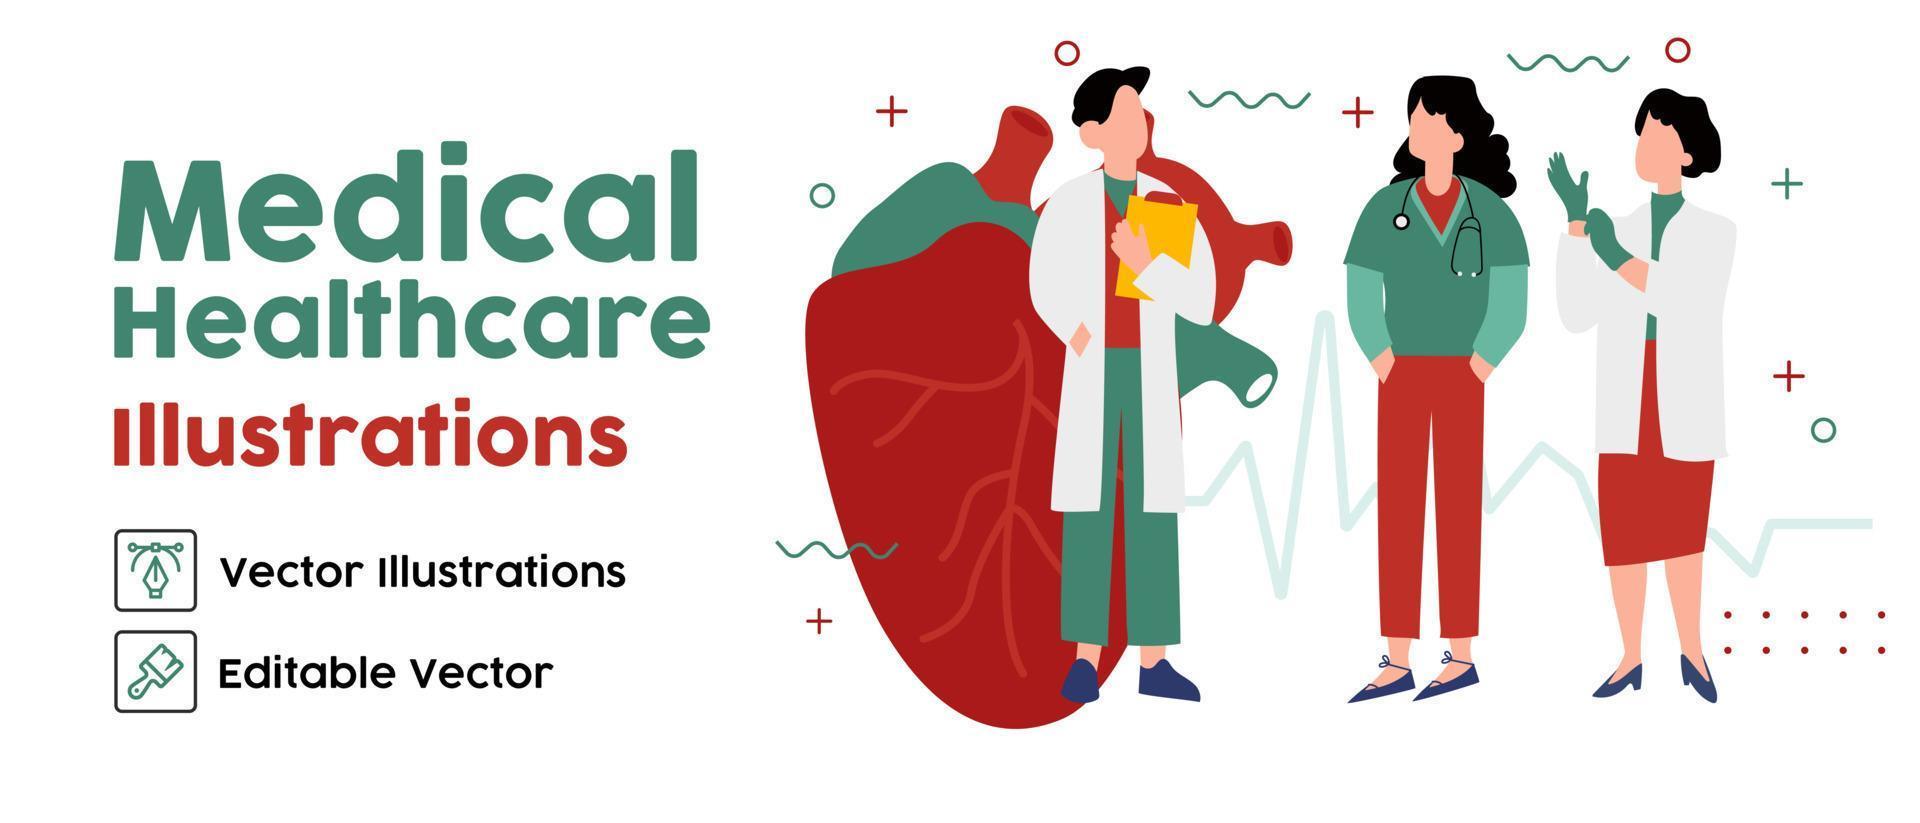 coração humano. conceito de cardiologia. médicos. diagnósticos de cardiologia. ilustração em vetor plana isométrica.